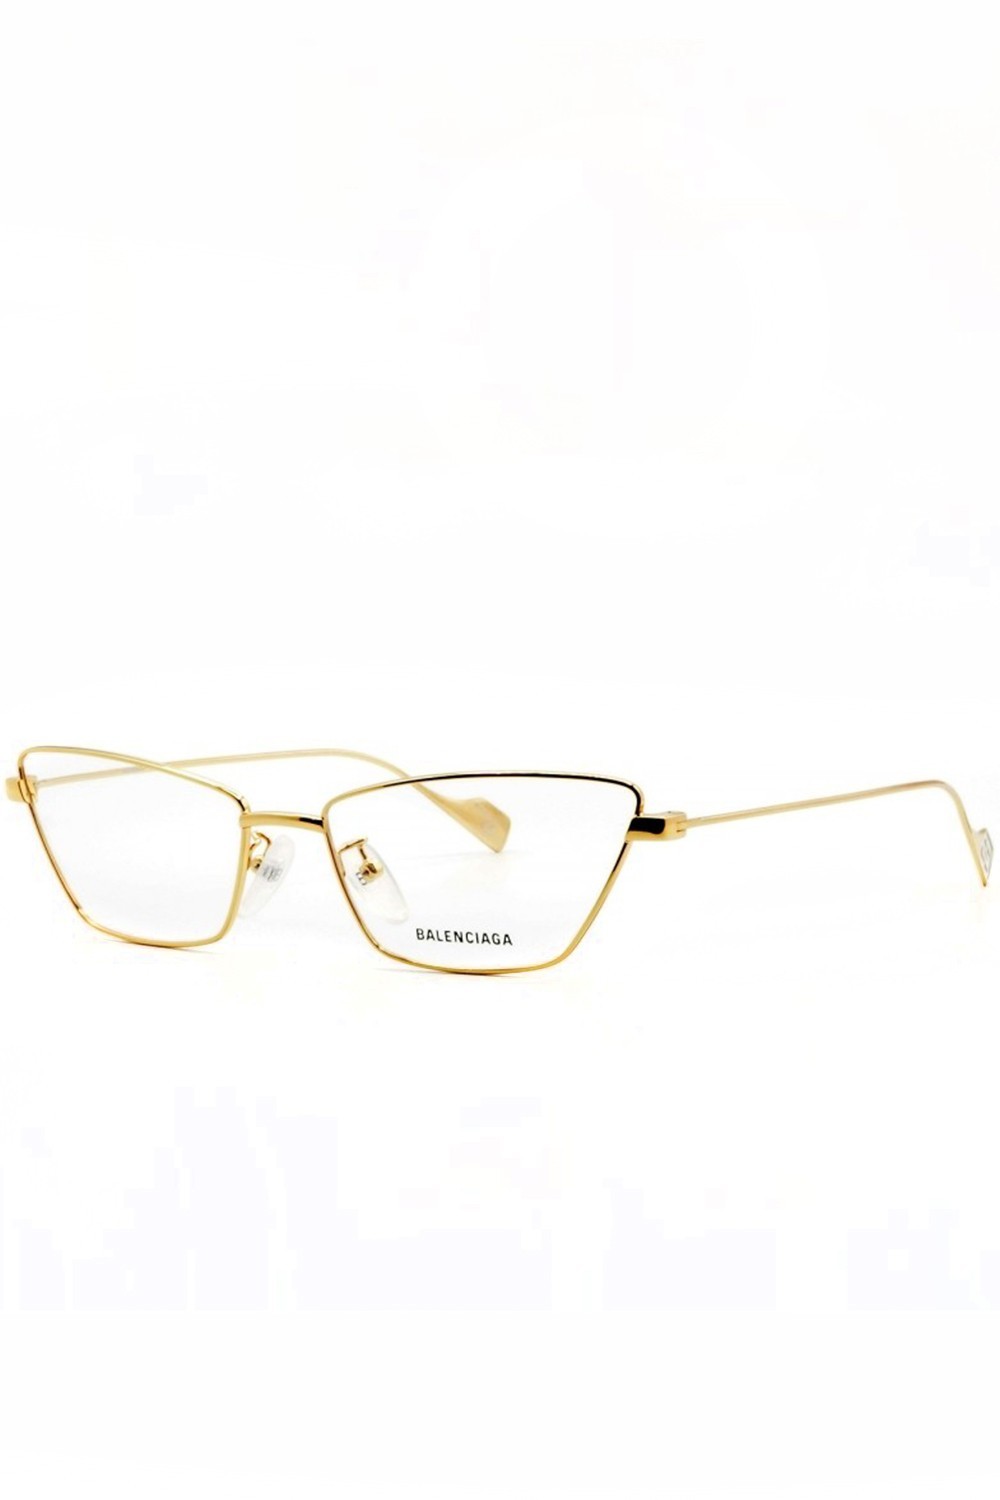 Balenciaga - Occhiali da vista in metallo cat eye per donna nero, oro - BB0091O